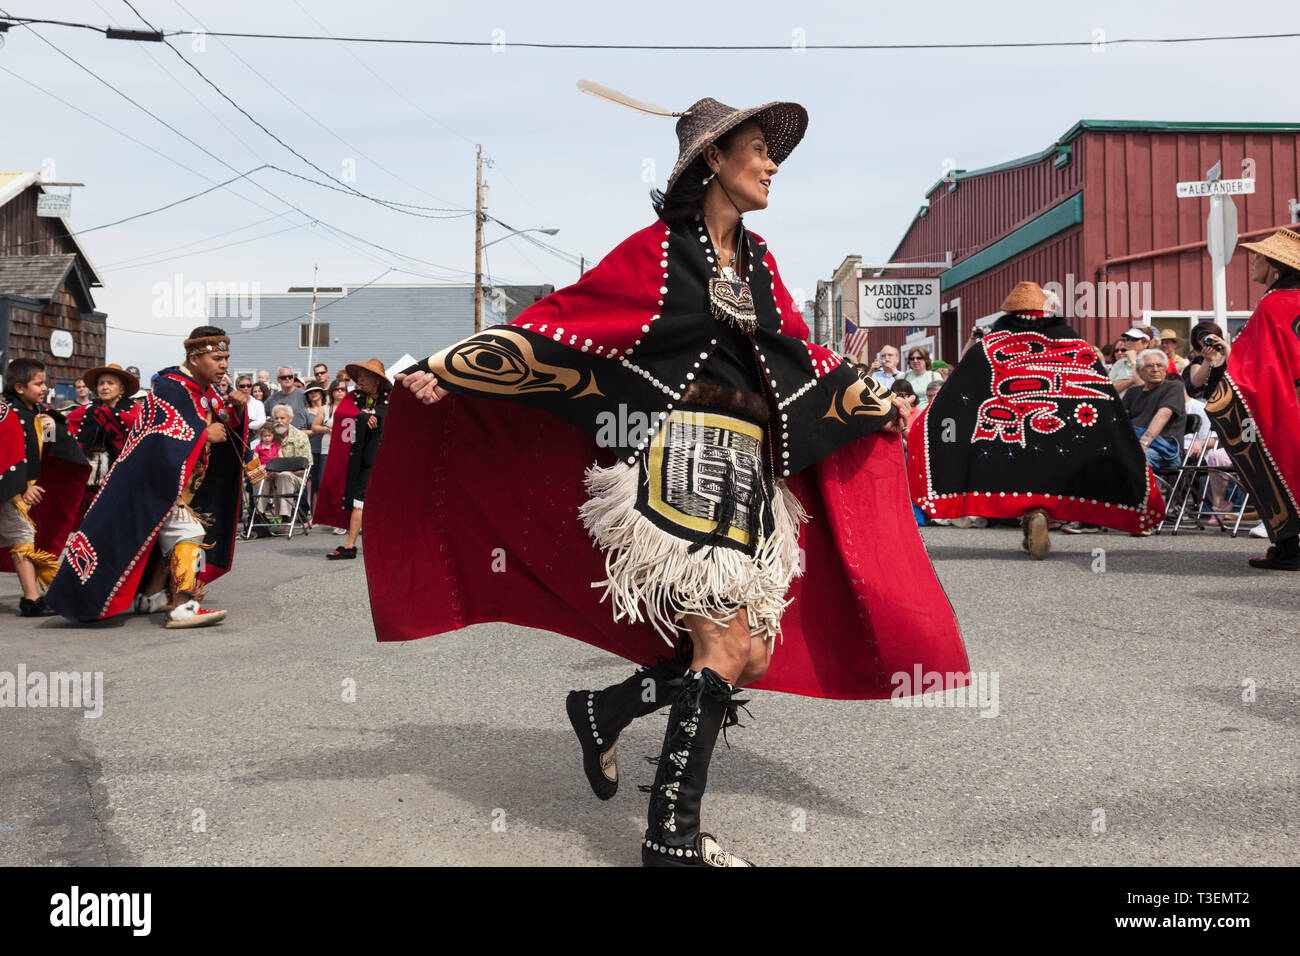 Native American Indian woman en costume traditionnel à danser à l'île de Whidbey Penn Cove Fête de l'eau. Les tribus du nord-ouest du Pacifique des Tlingits de Haida. Banque D'Images